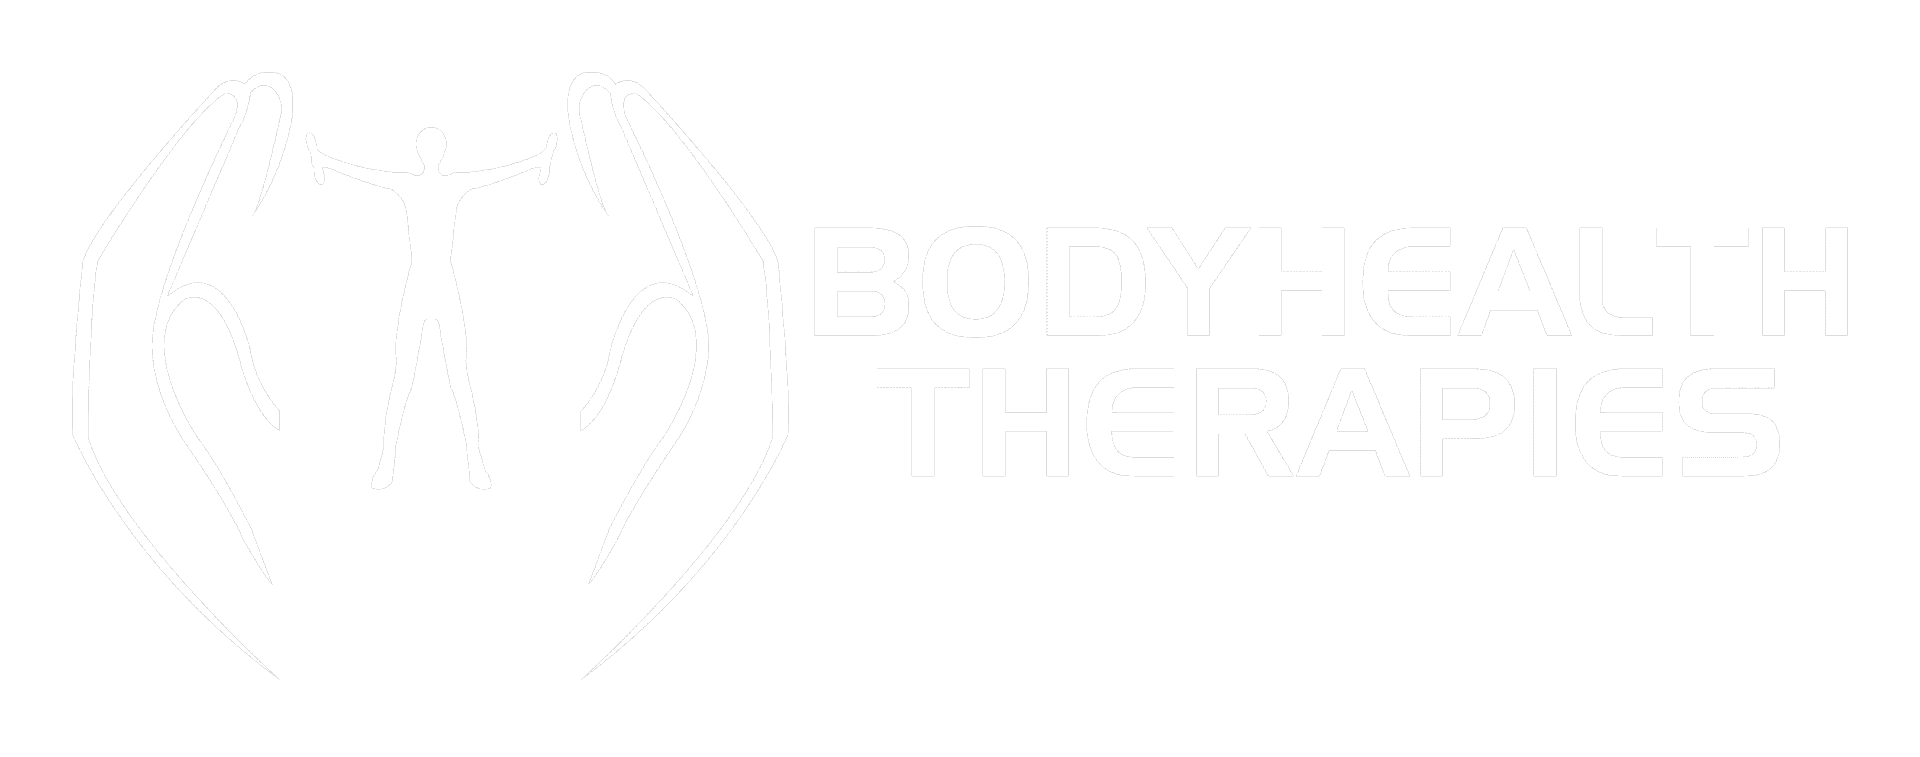 bodyhealththerapies-logo-1920